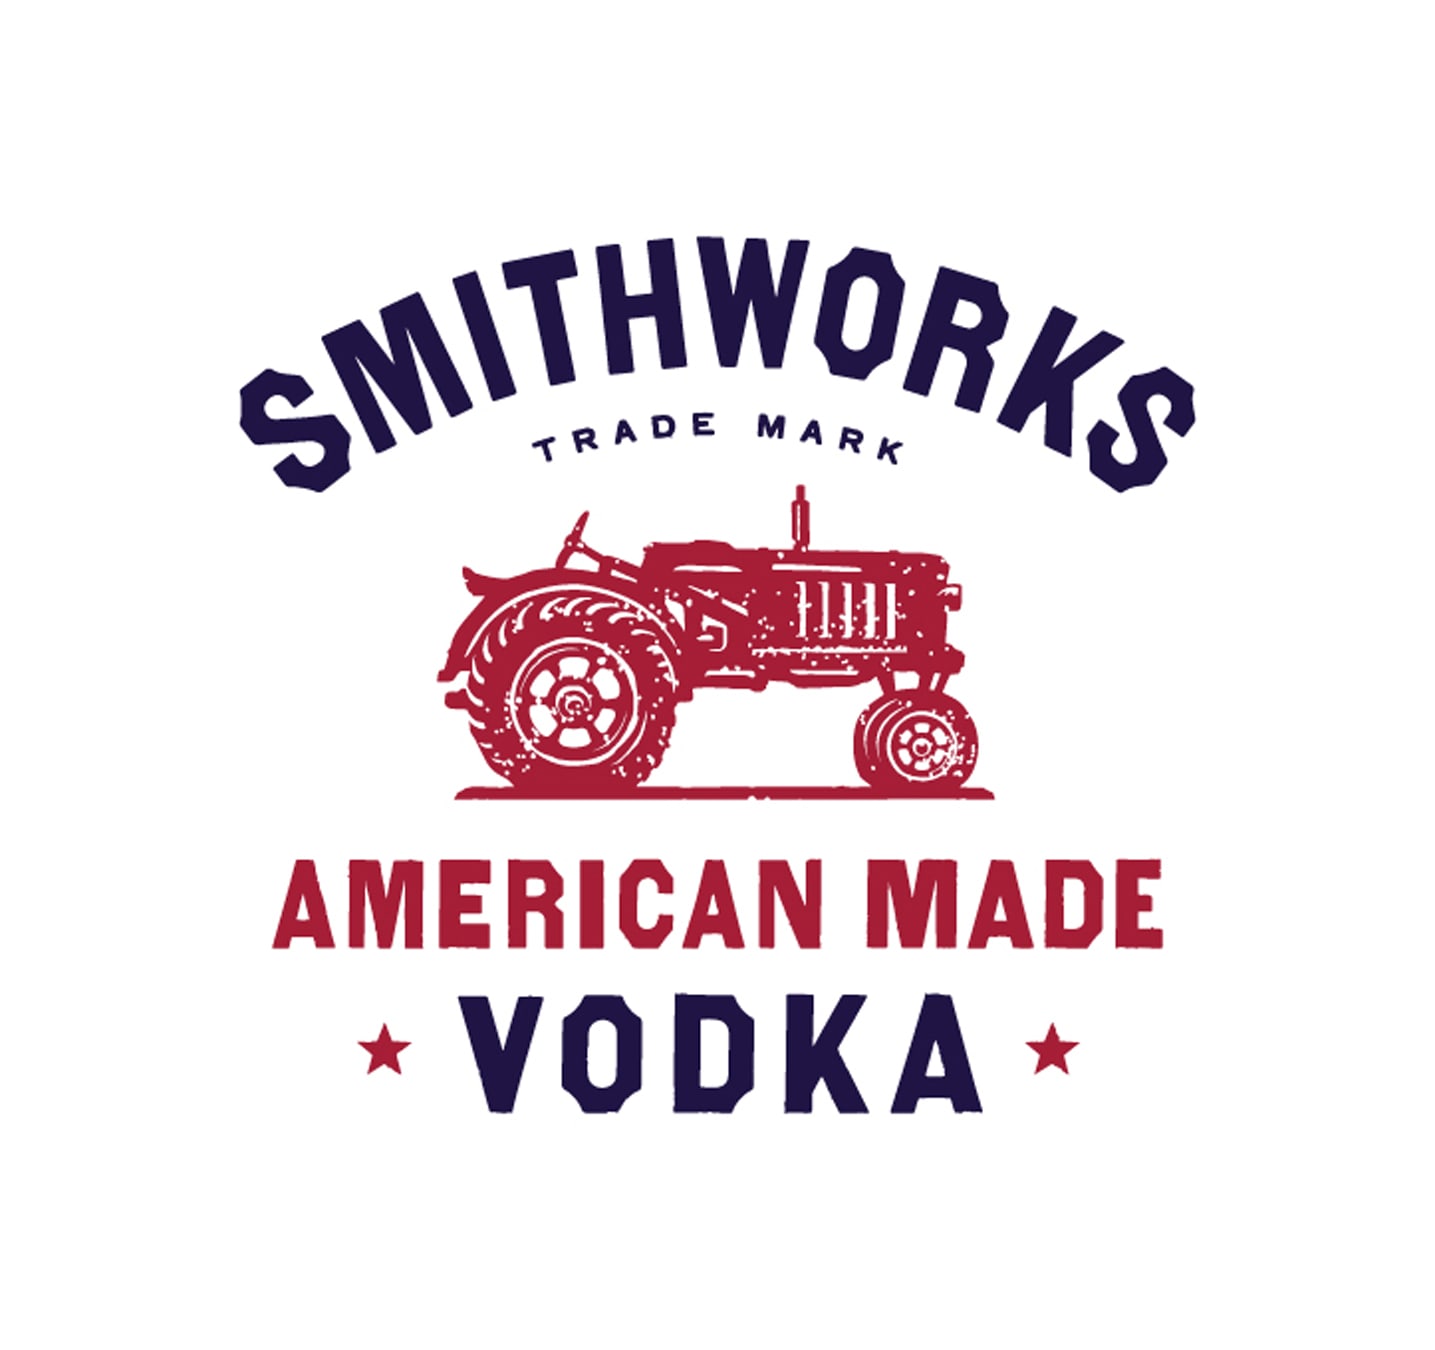 Smithworks Vodka spirits identity logo design